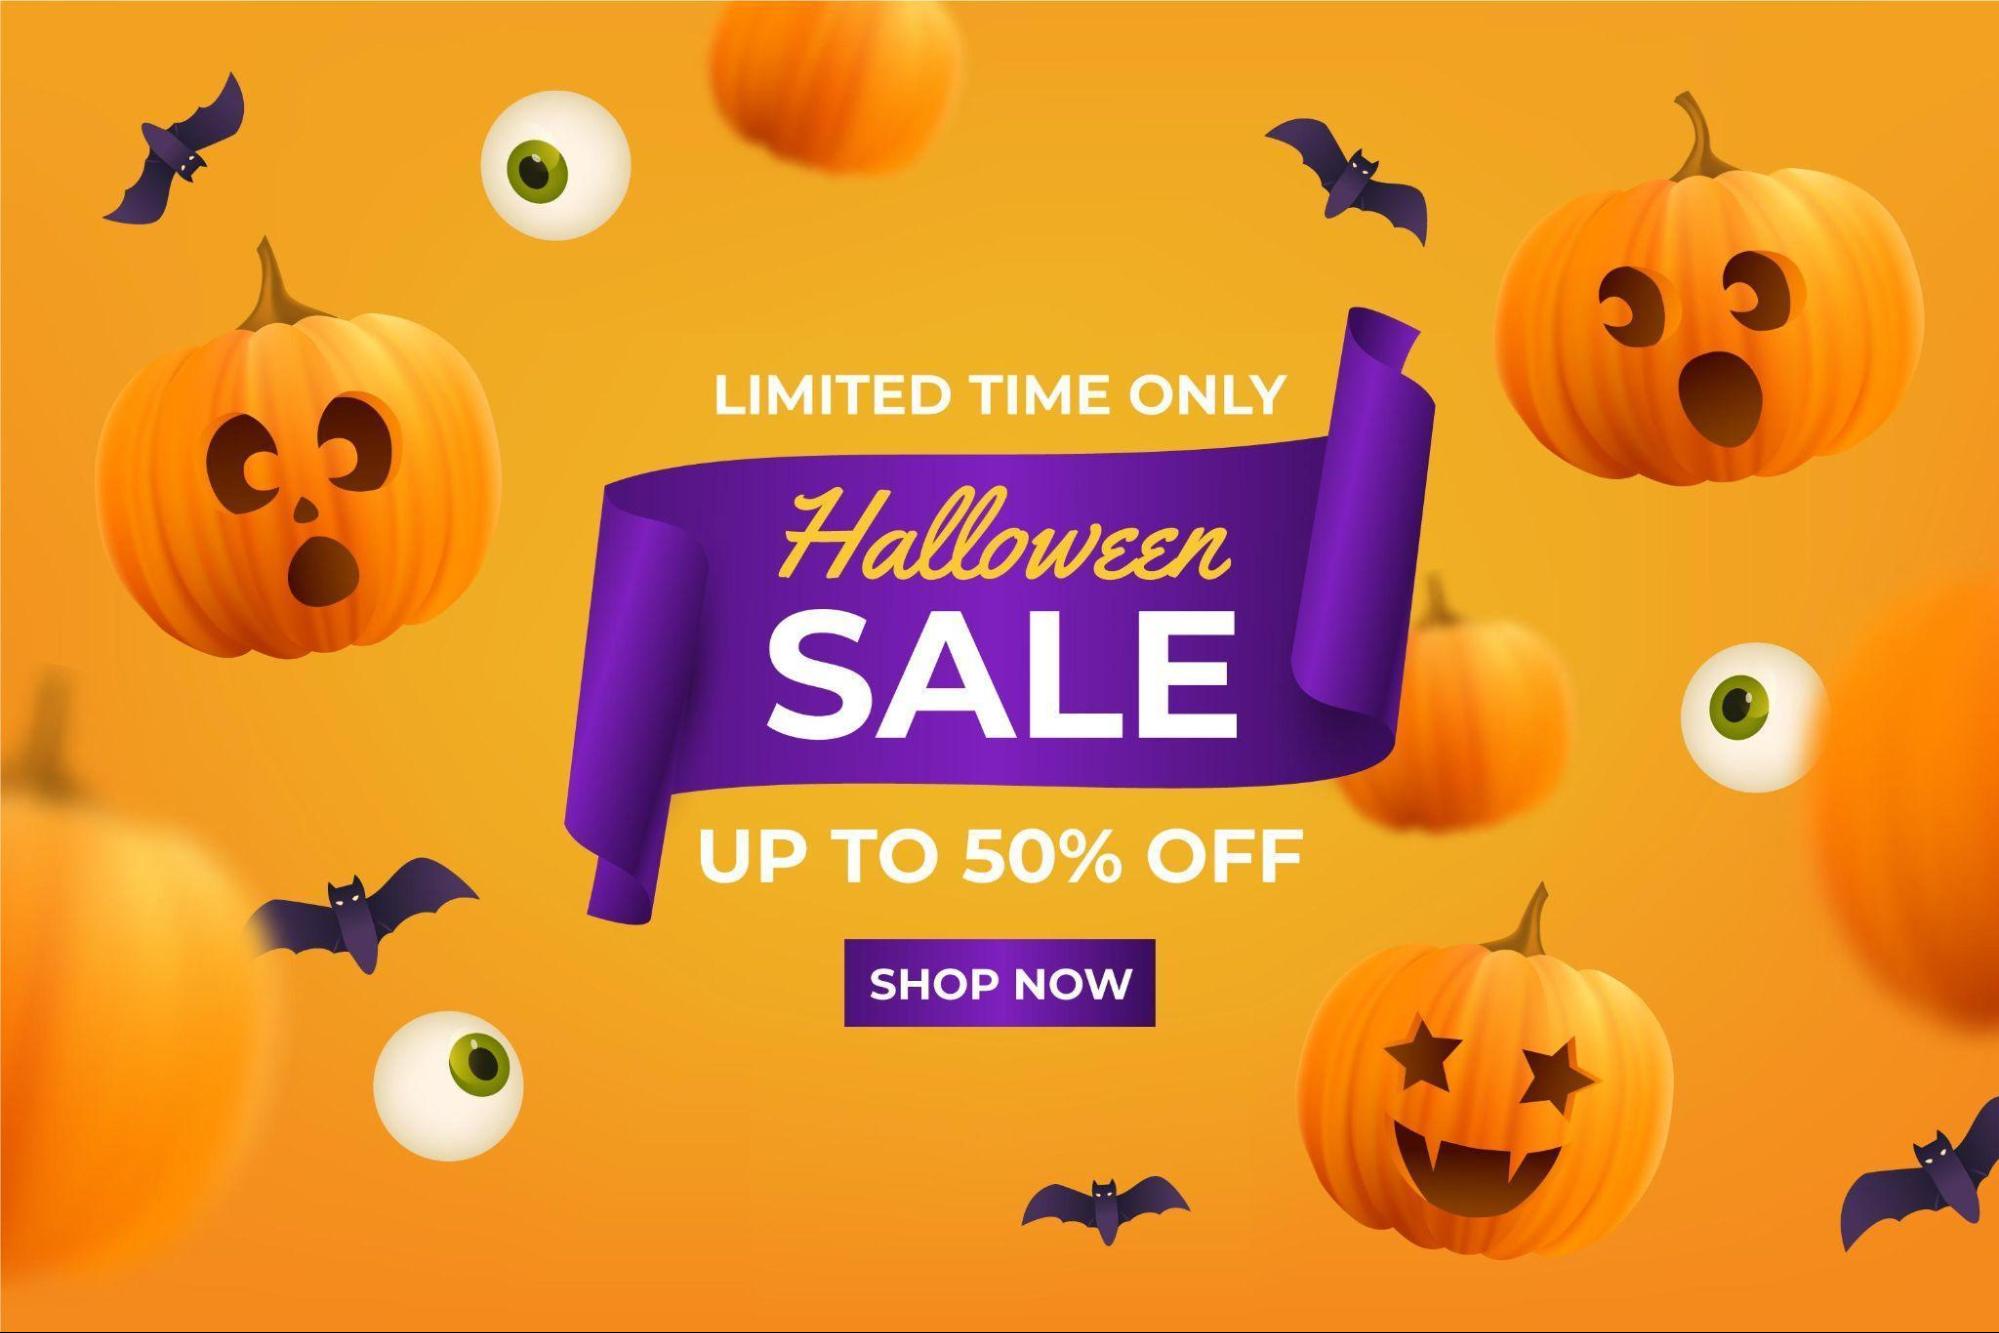 halloween sales image deals